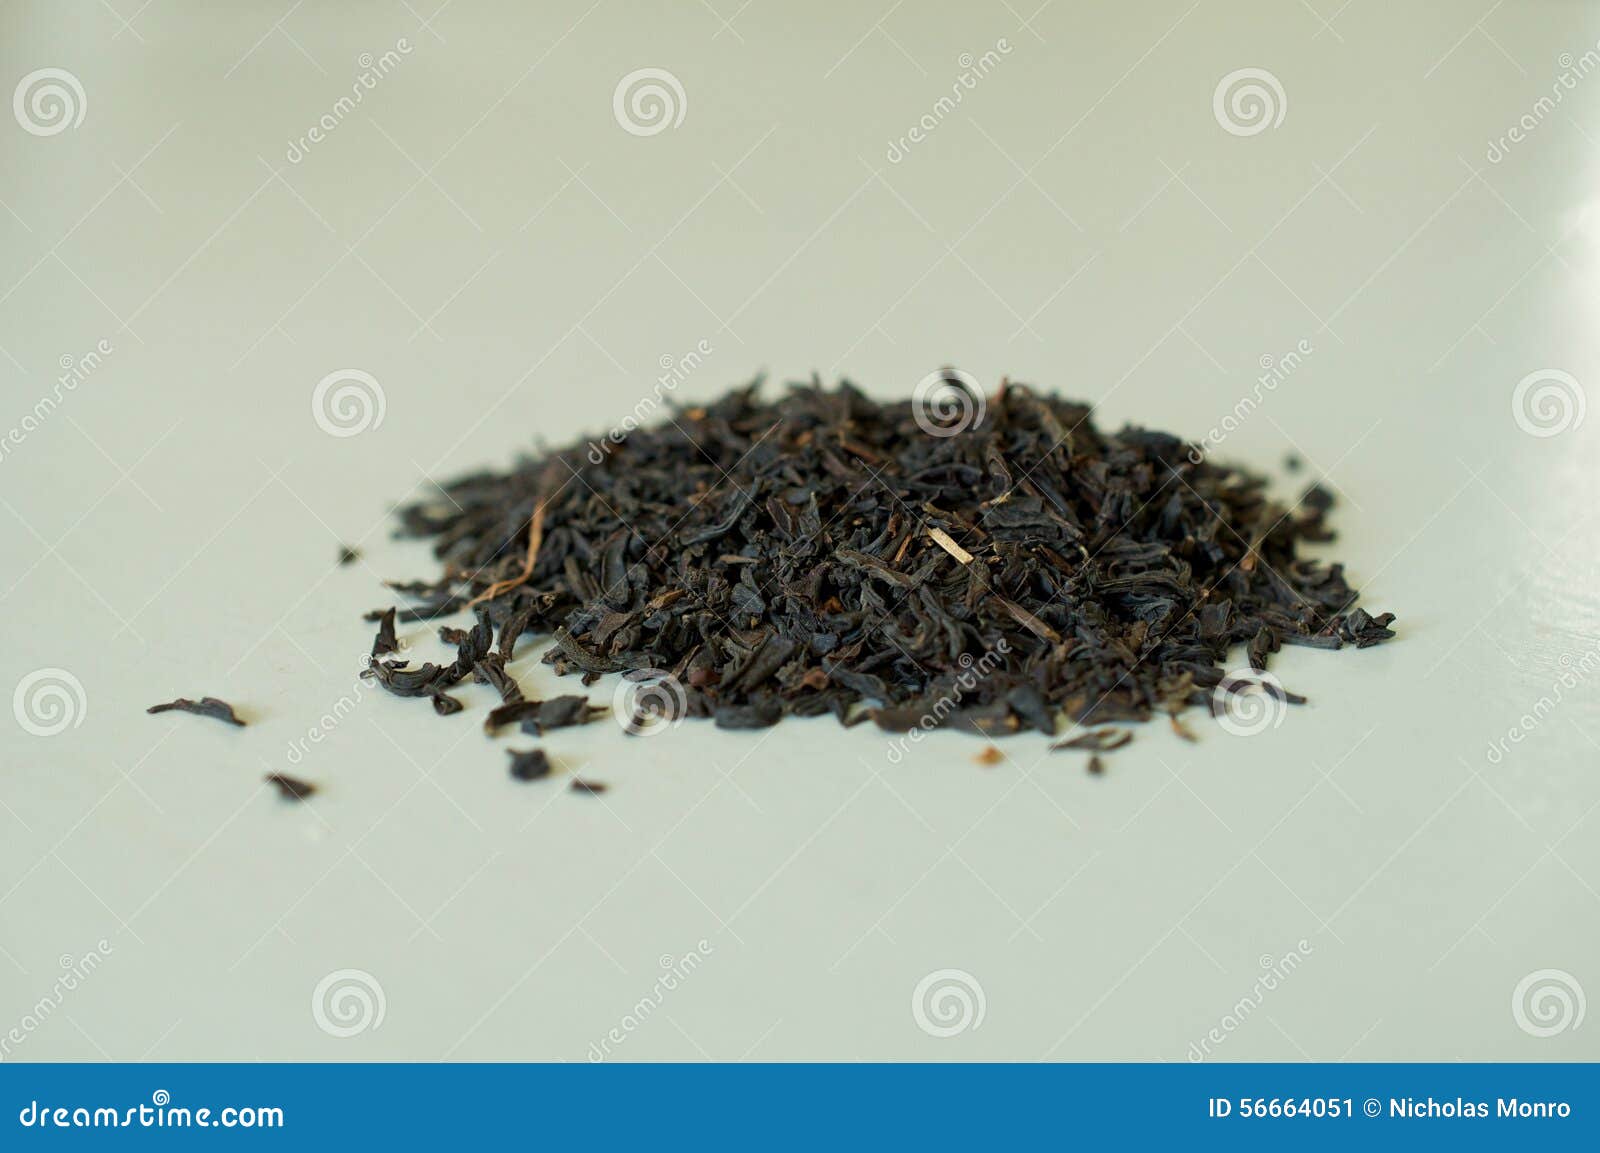 Loose Leaf Black Tea stock image. Image of leaves, teas - 56664051